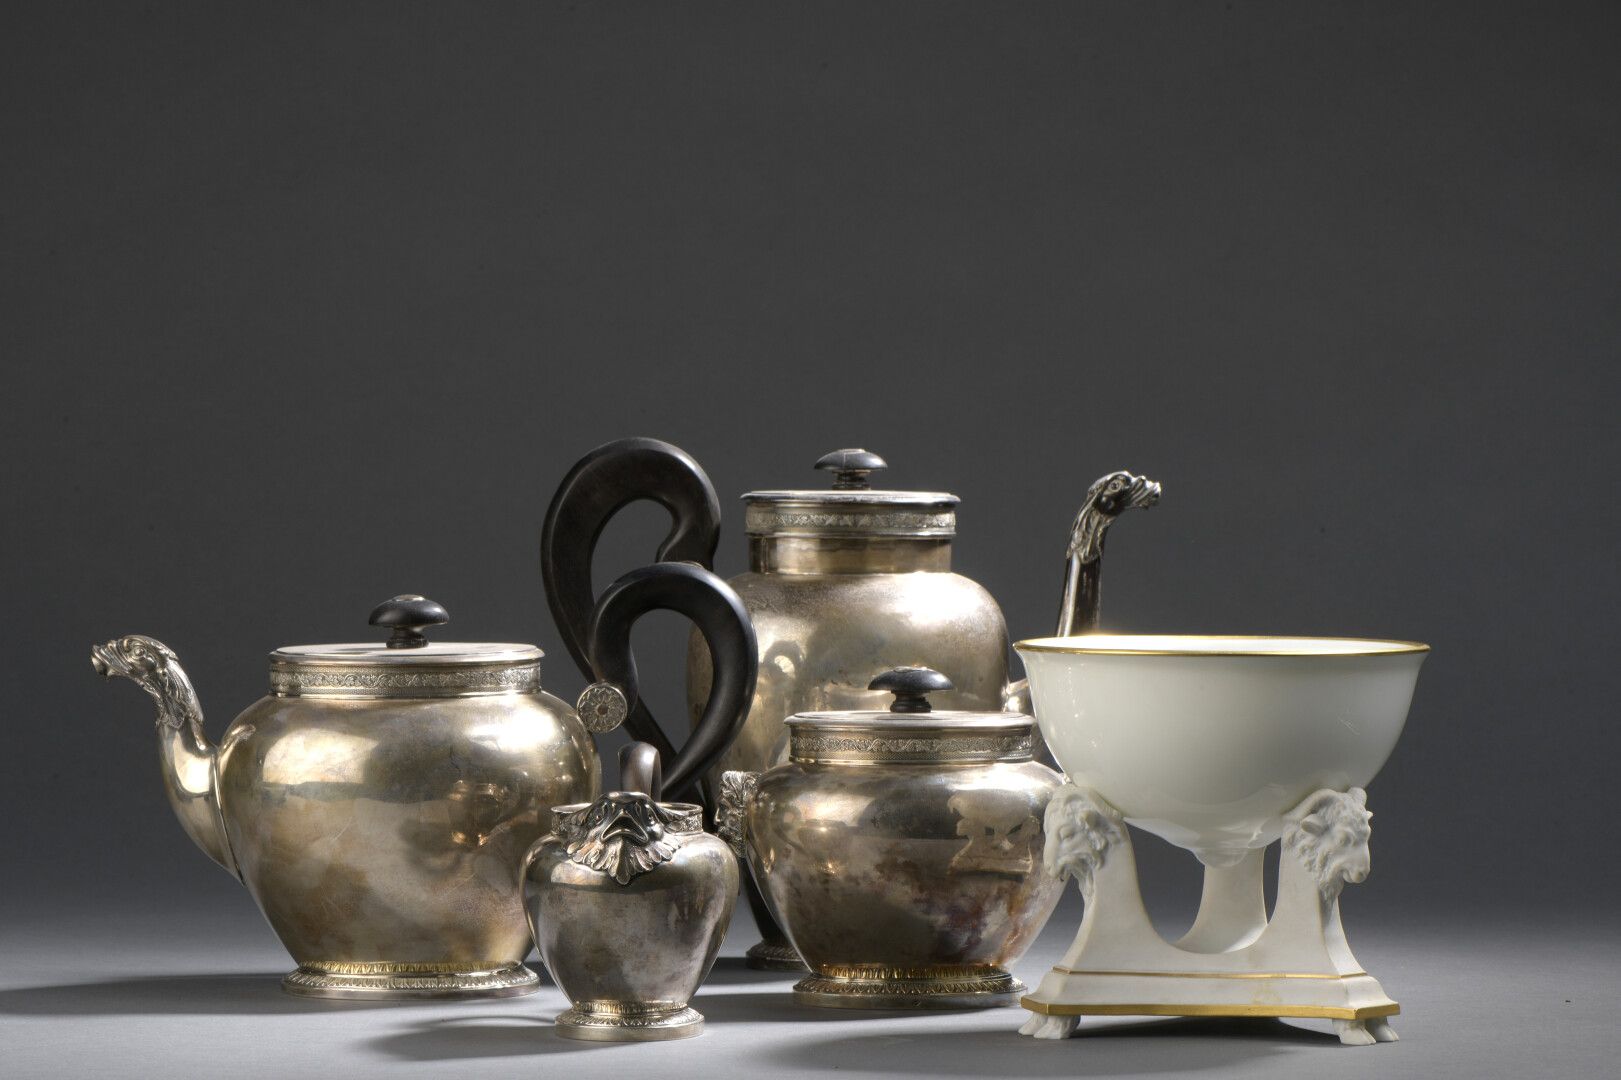 Null Silbernes Tee- und Kaffeeservice im Empire-Stil, Marke Minerve

Dazu gehöre&hellip;